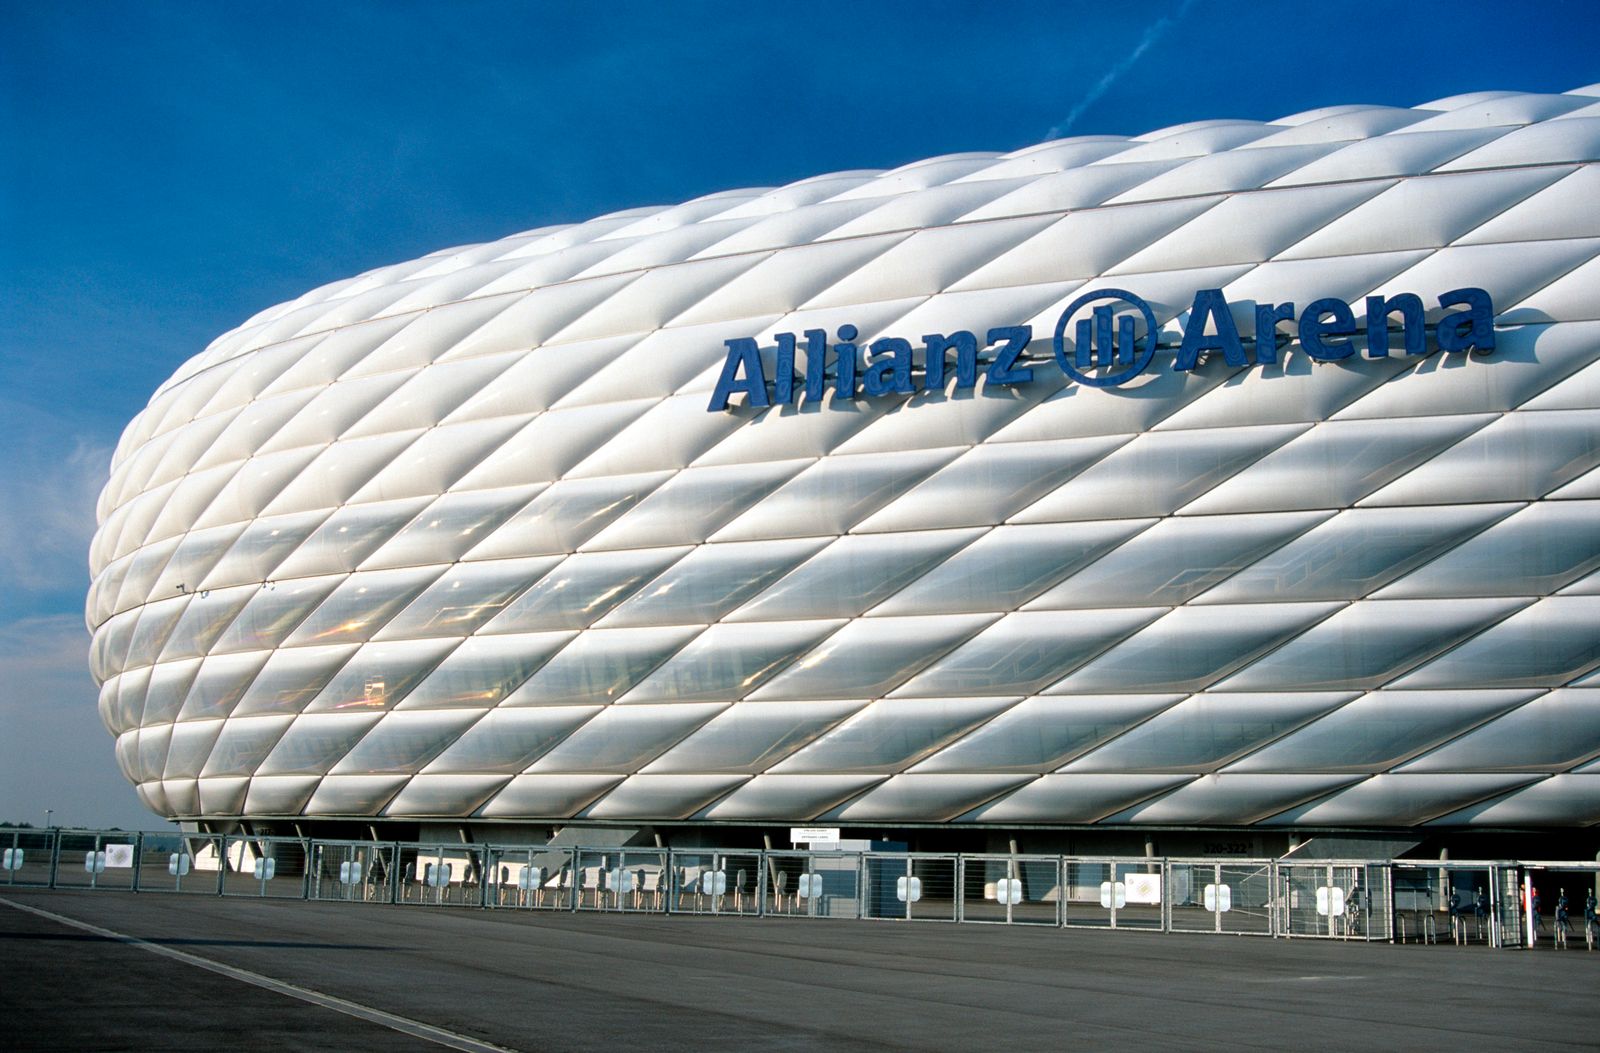 アリアンツ・アレーナ(Allianz Arena)